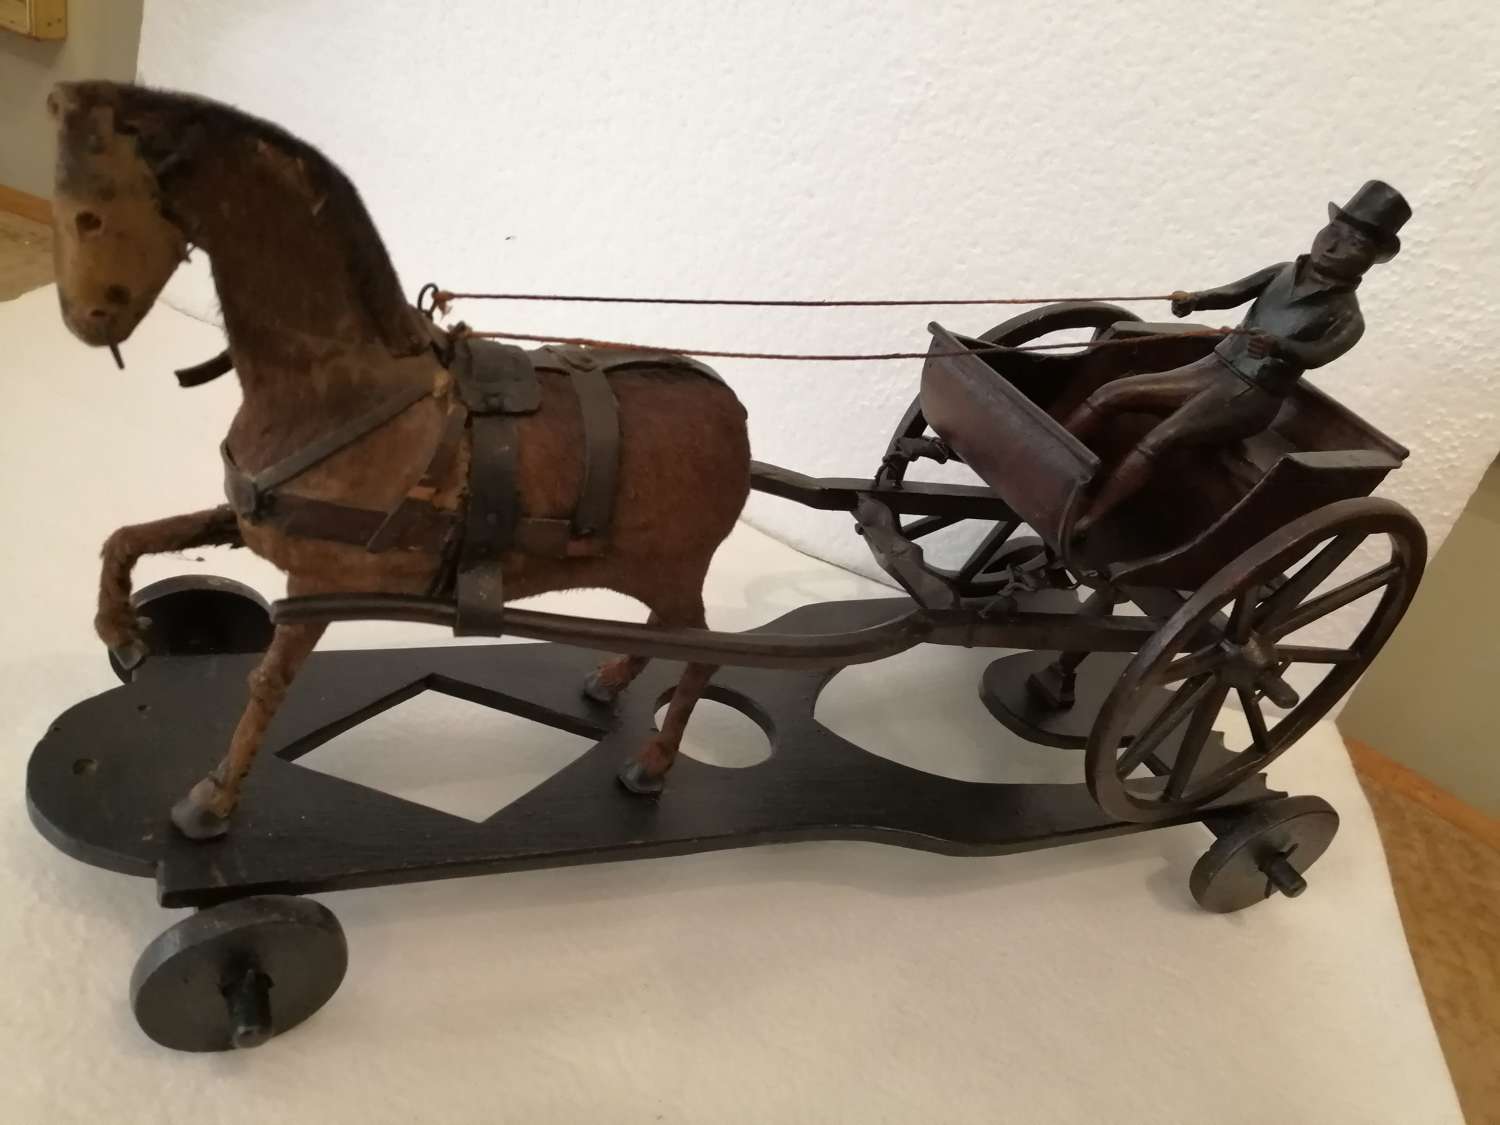 A 19th century folk art model of a horse drawn gig/buggy